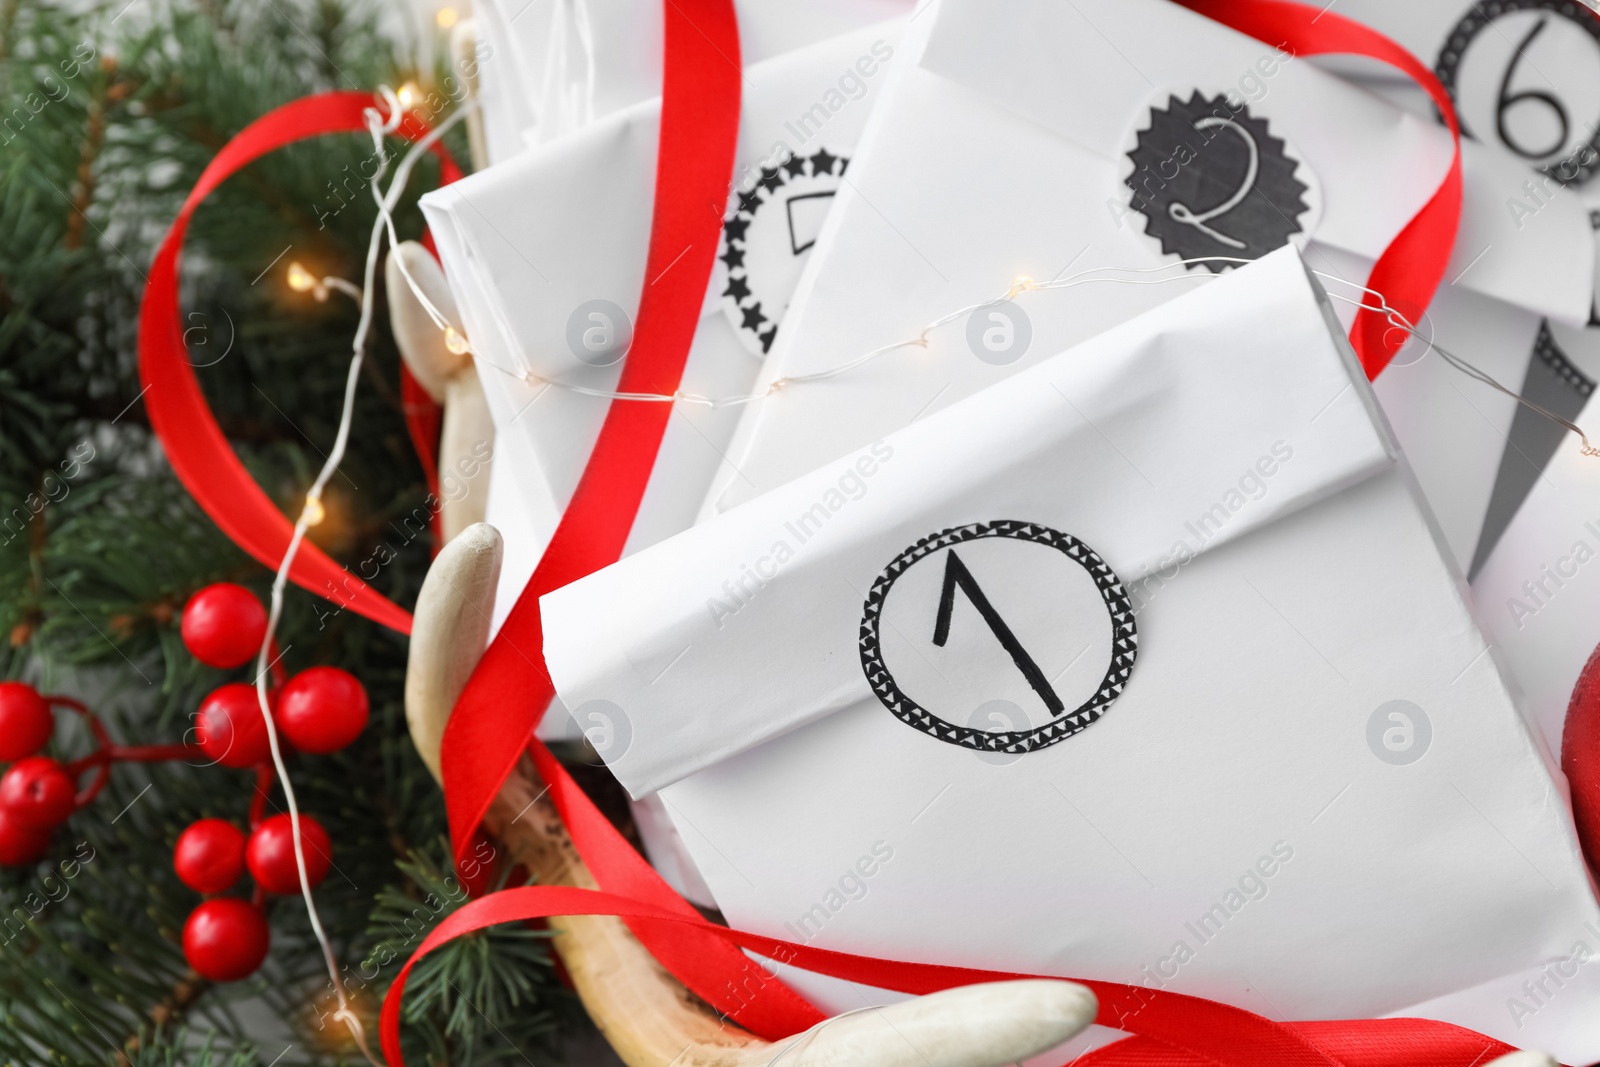 Photo of Paper bags and festive decor, closeup. Christmas advent calendar